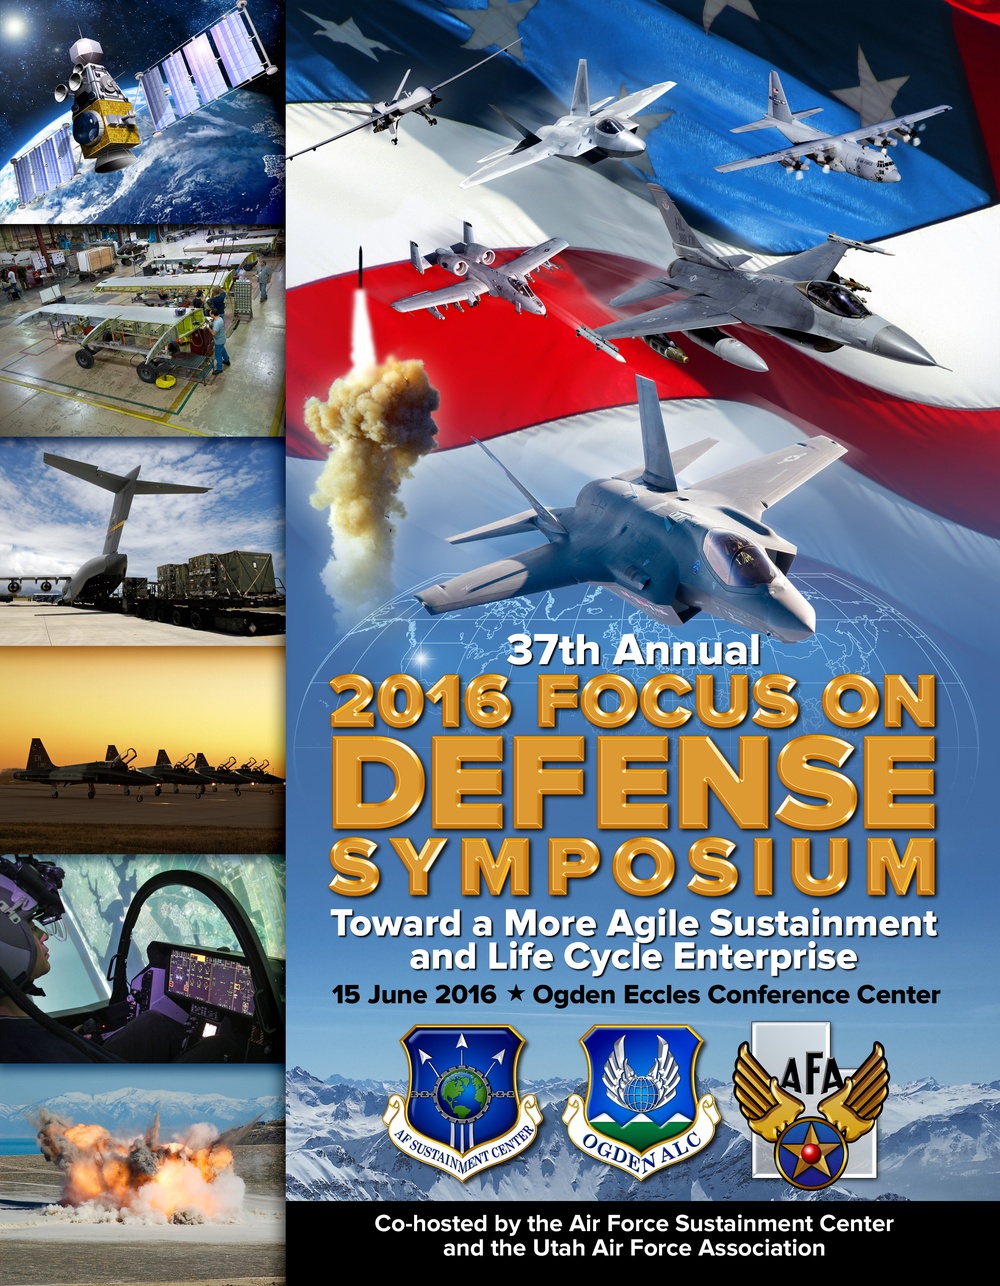 Focus on Defense Symposium program cover